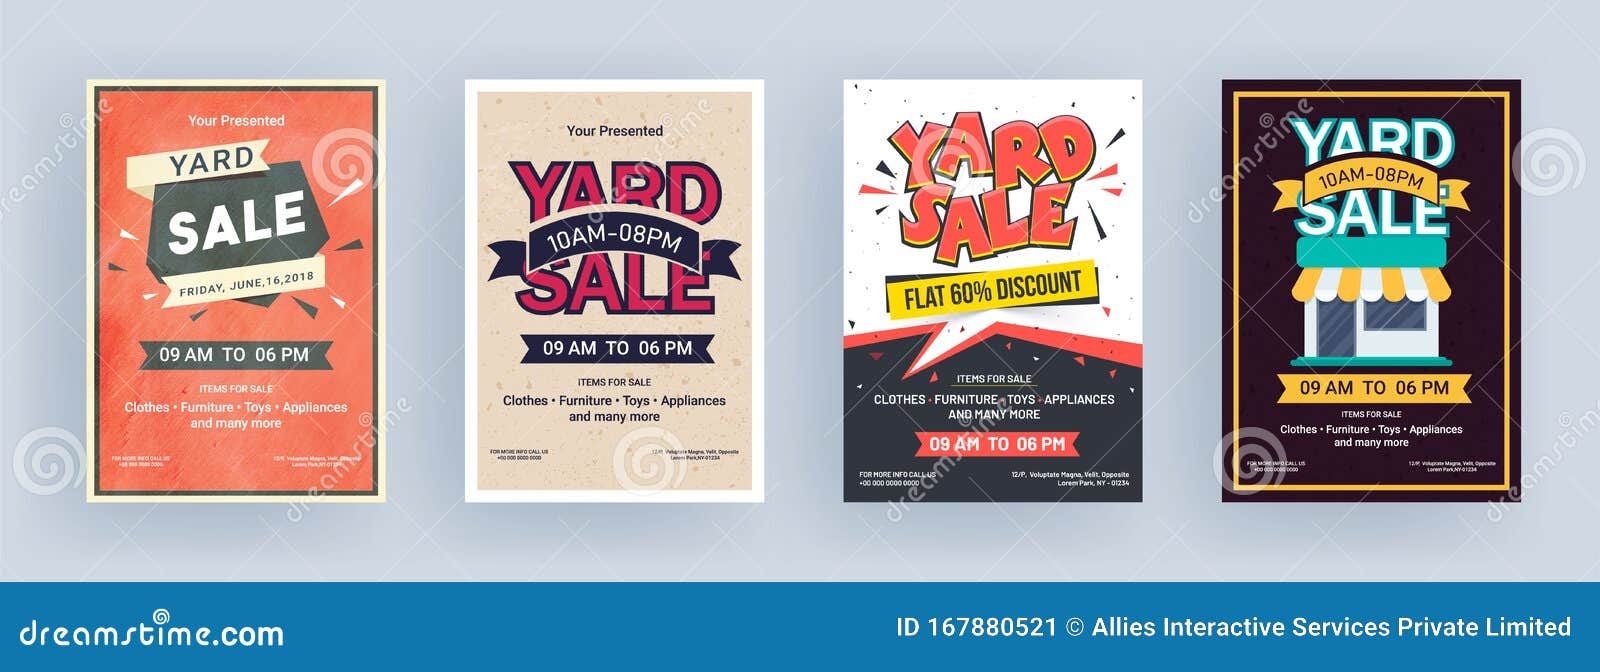 Vintage Yard Sale Flyer or Template Design. Stock Illustration Intended For Garage Sale Flyer Template Word